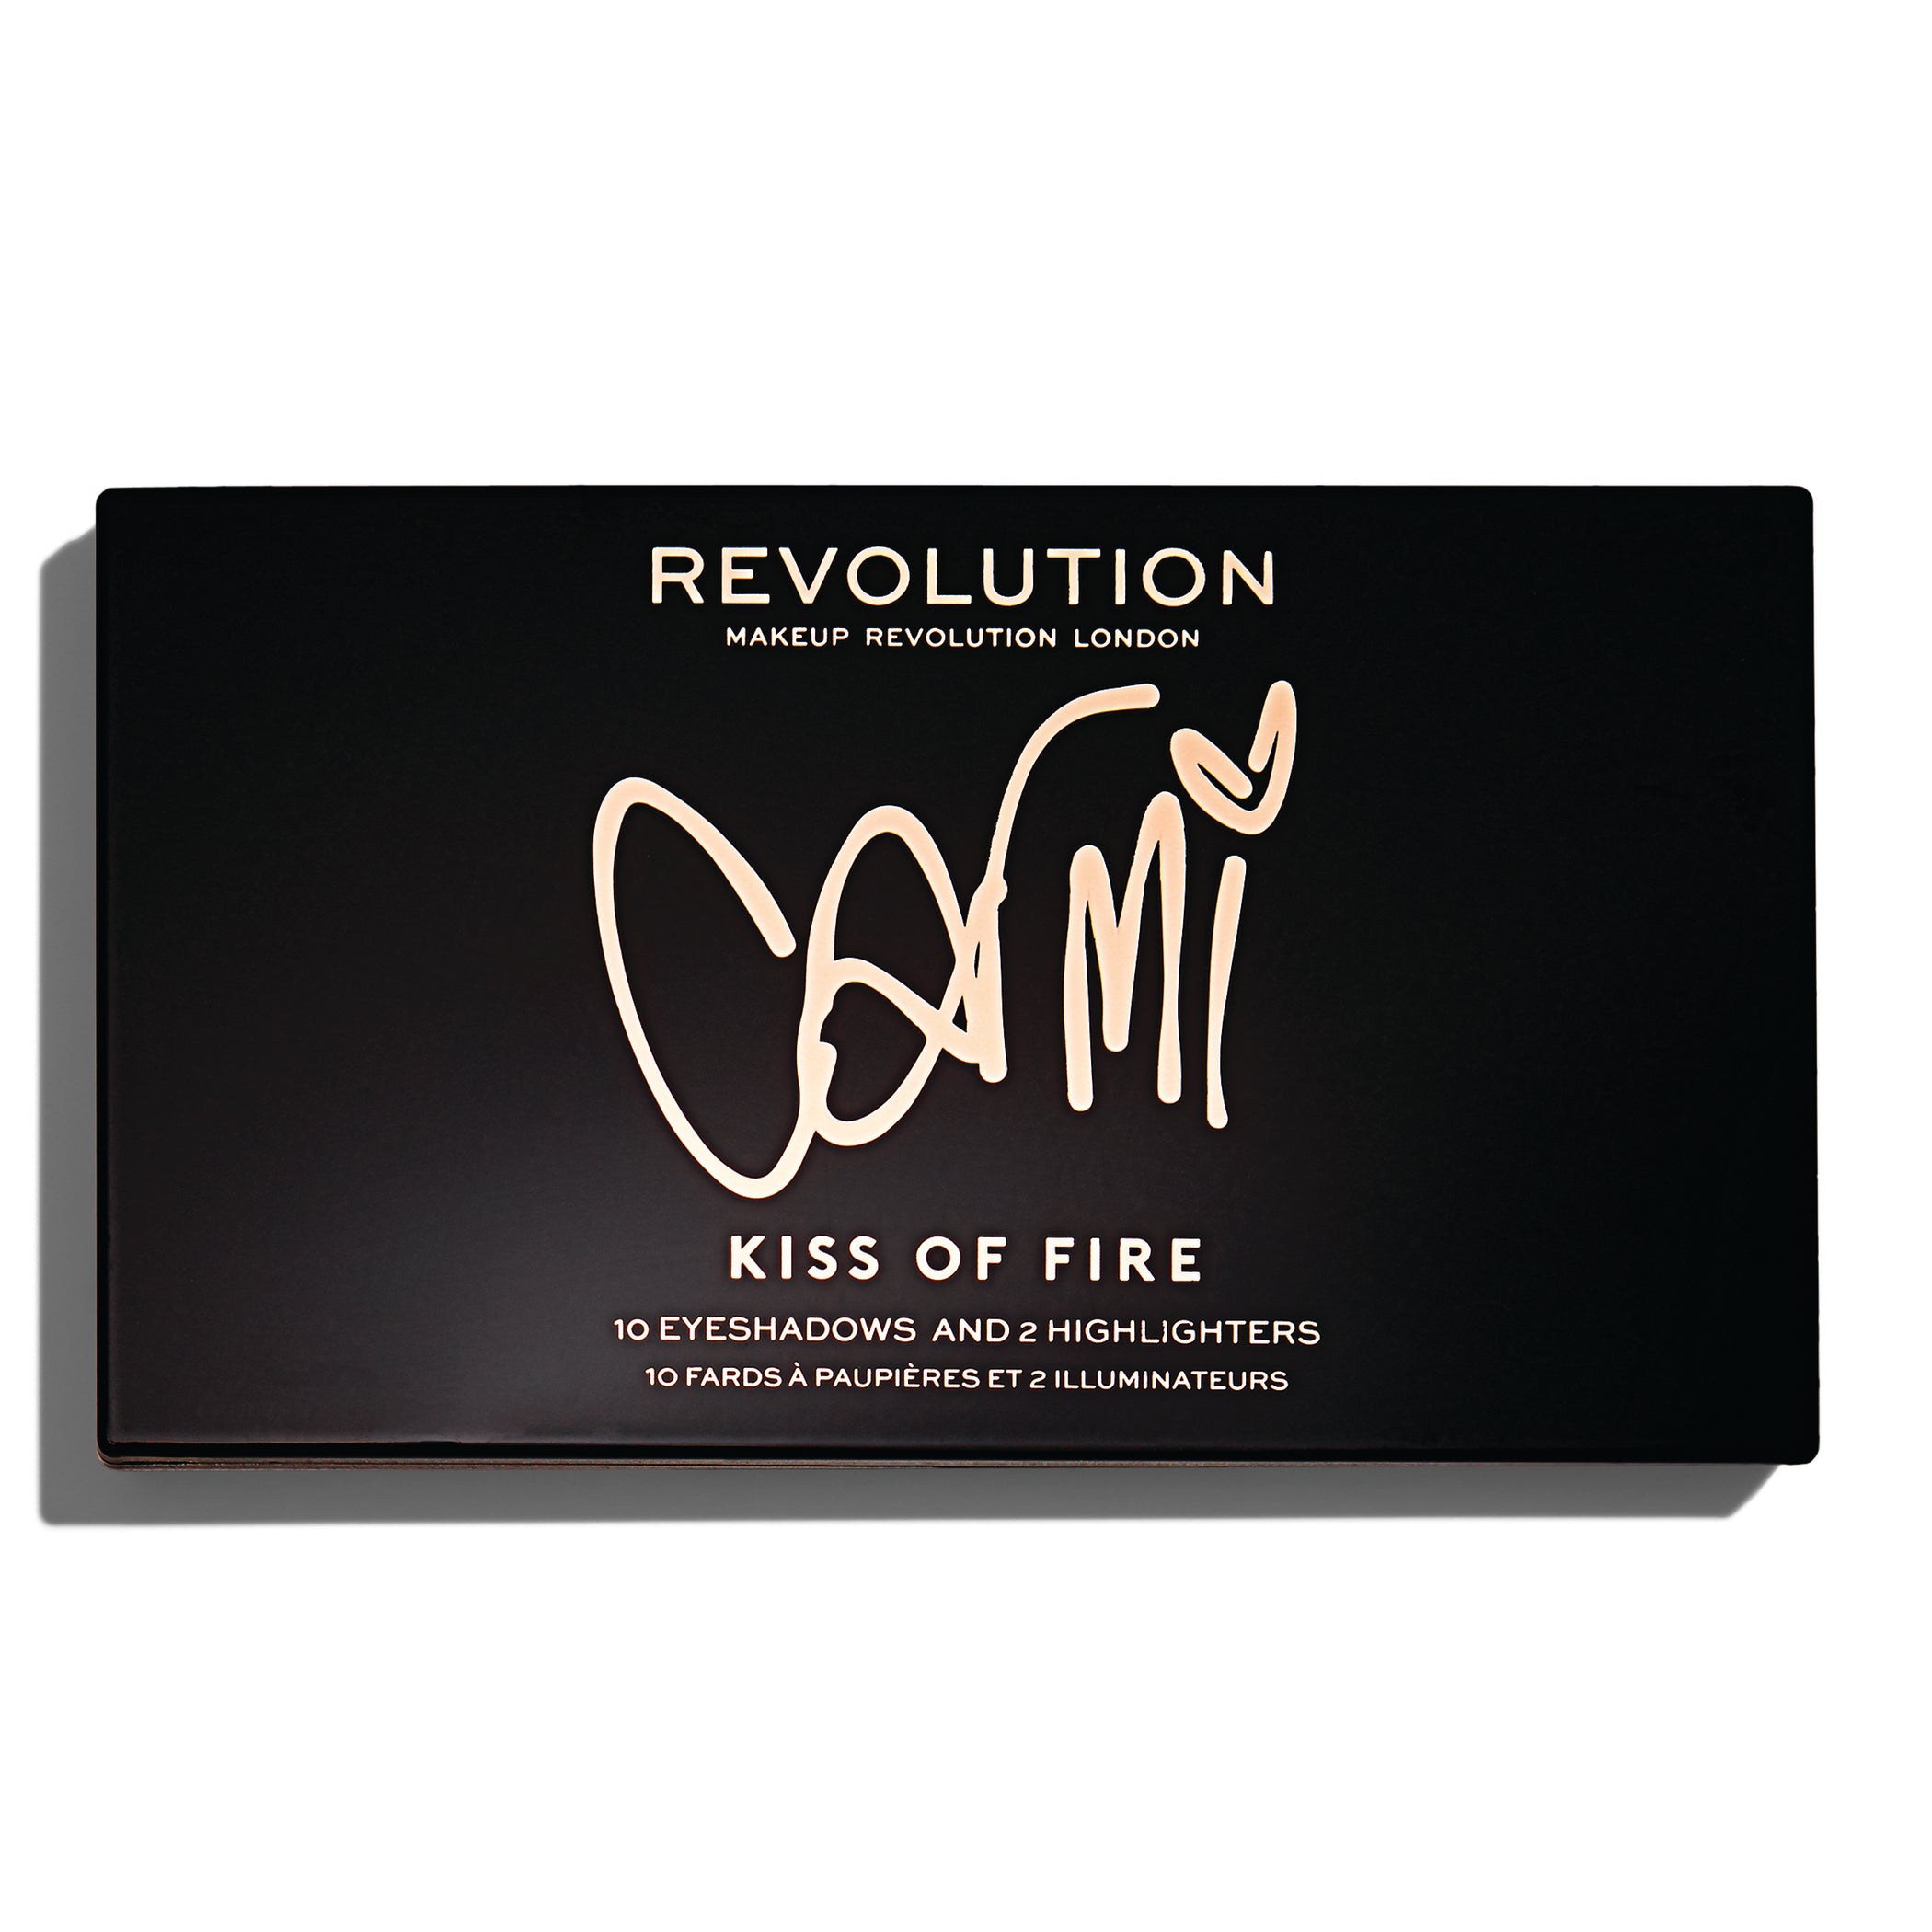 Makeup Revolution X Carmi Kiss Of Fire Palette